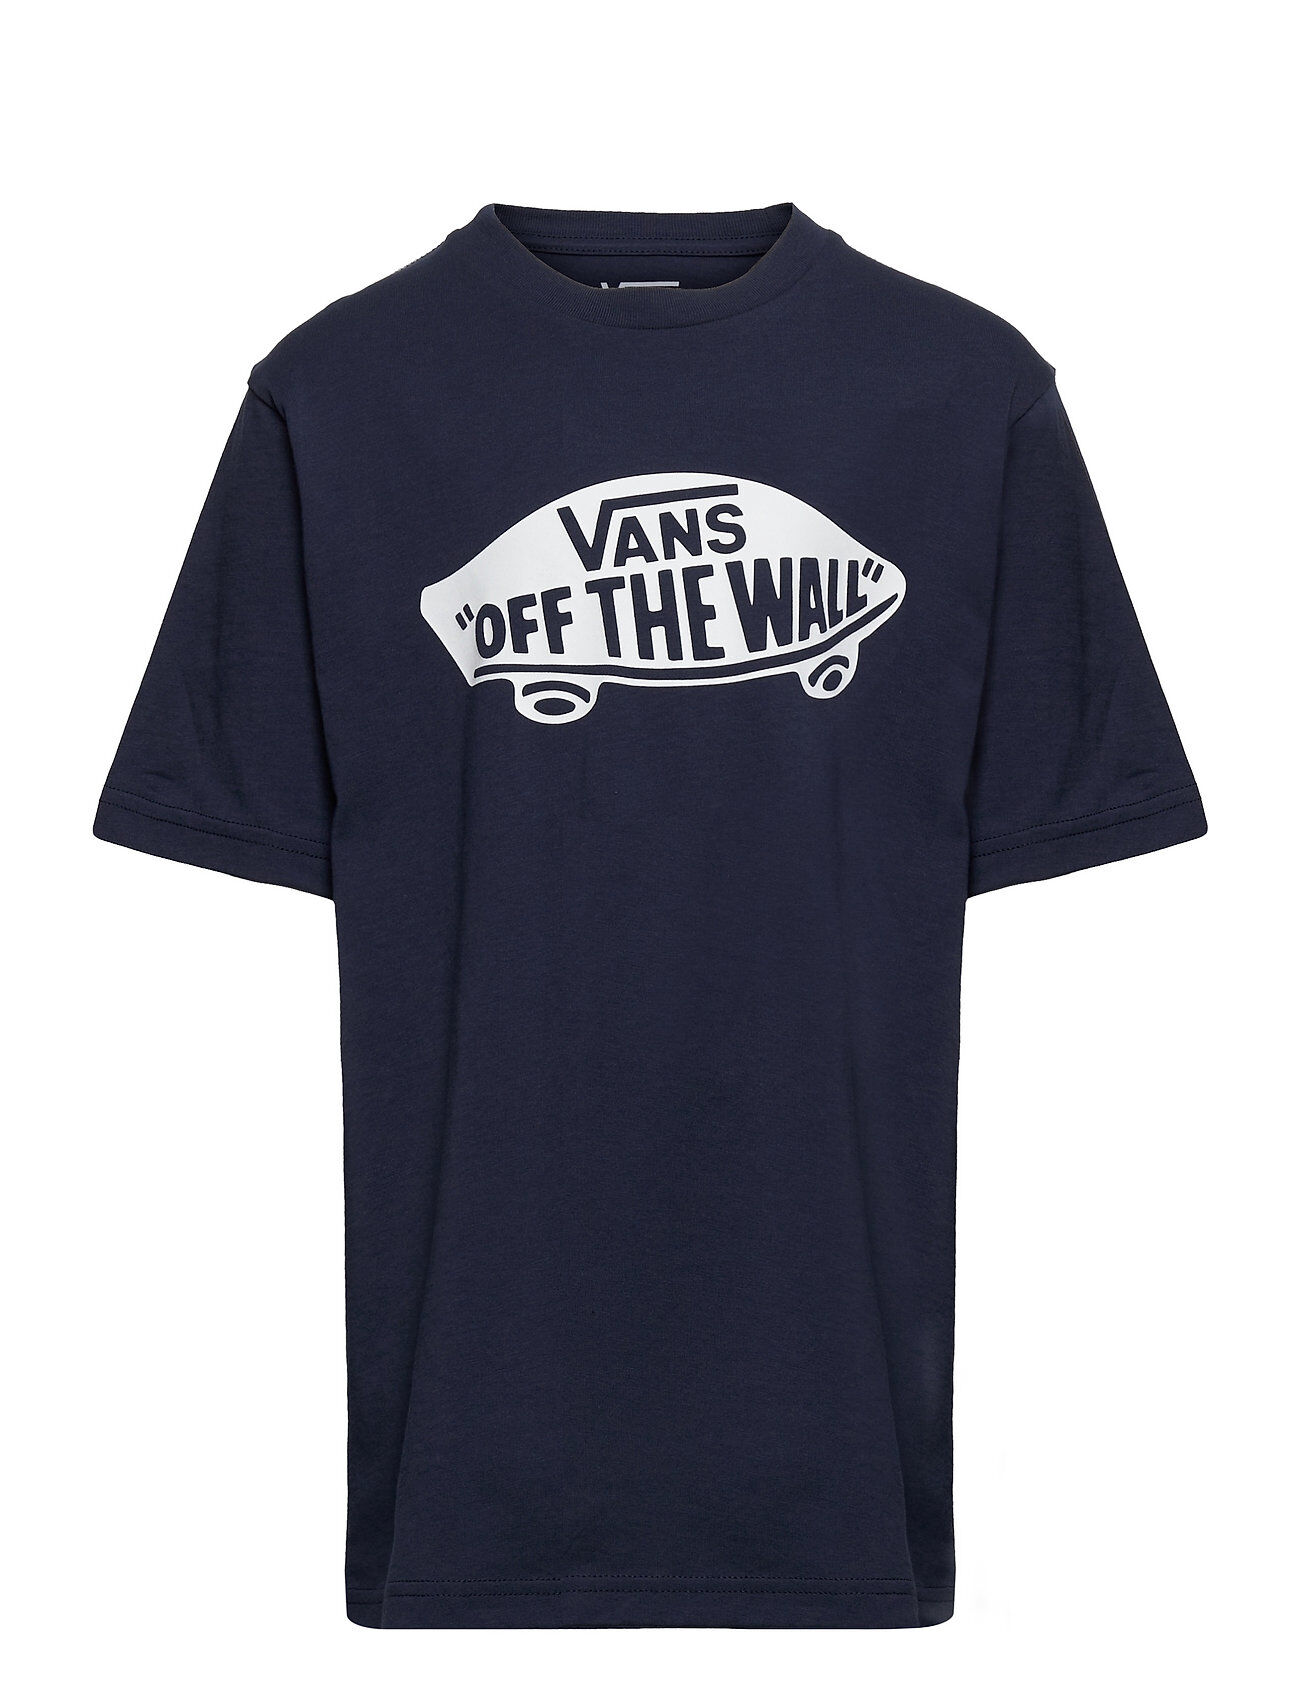 VANS Otw Boys T-shirts Short-sleeved Blå VANS